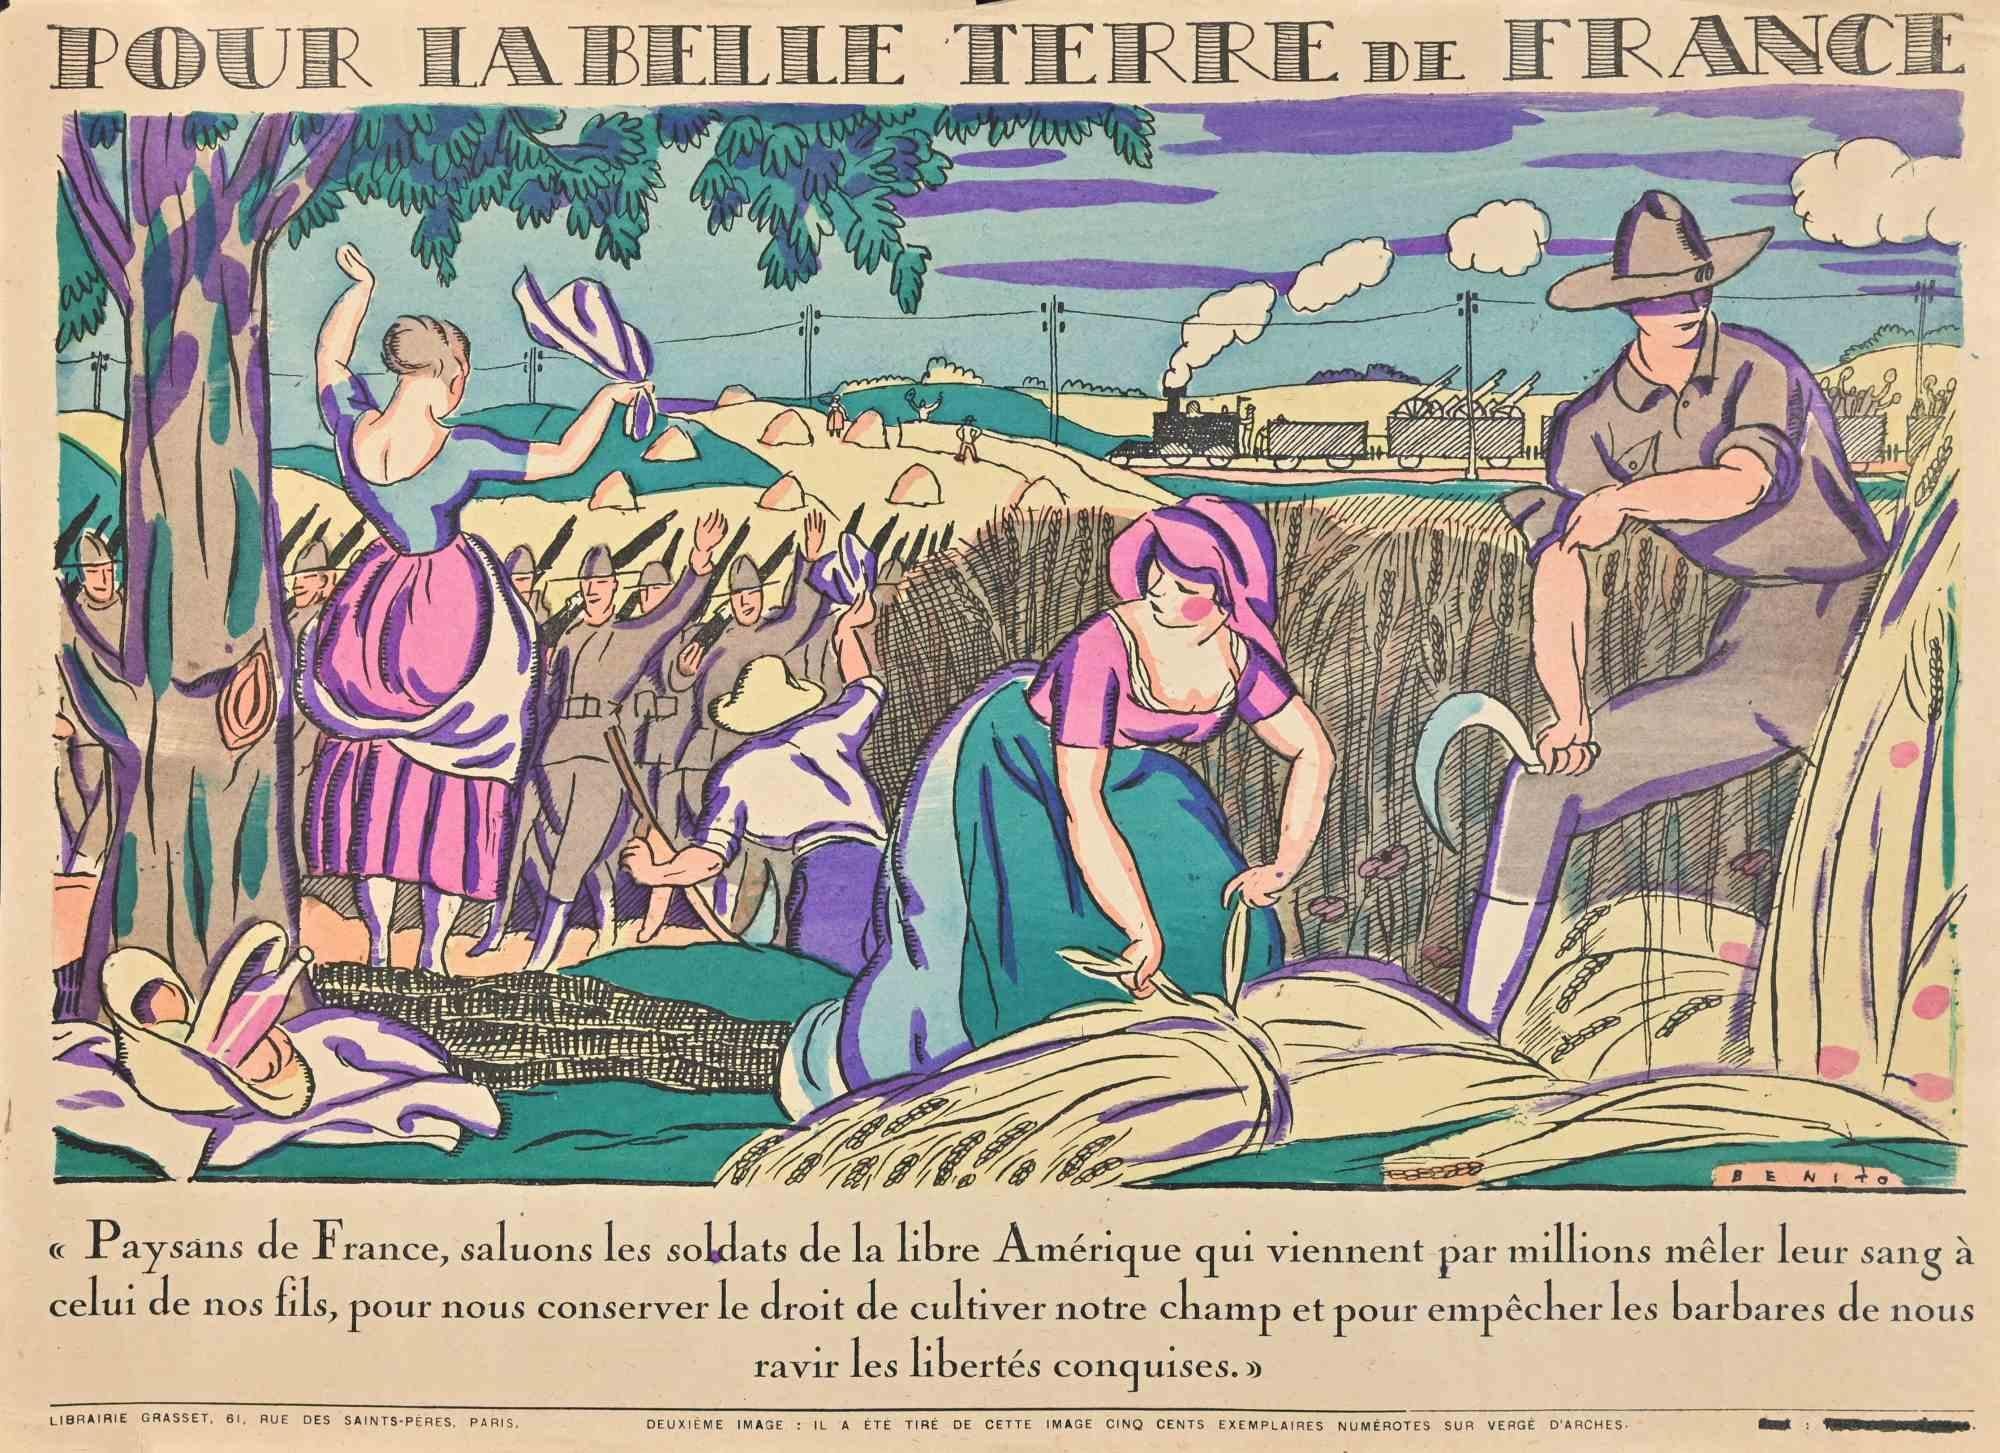 Pour la belle terre de France ist ein Original-Holzschnitt von Benito (Edmond Garcia, 1891-1961) aus dem frühen 20.

Guter Zustand.

Auflage von 500 Stück, nicht nummeriert.

Das Kunstwerk wird mit kräftigen Strichen in einer ausgewogenen